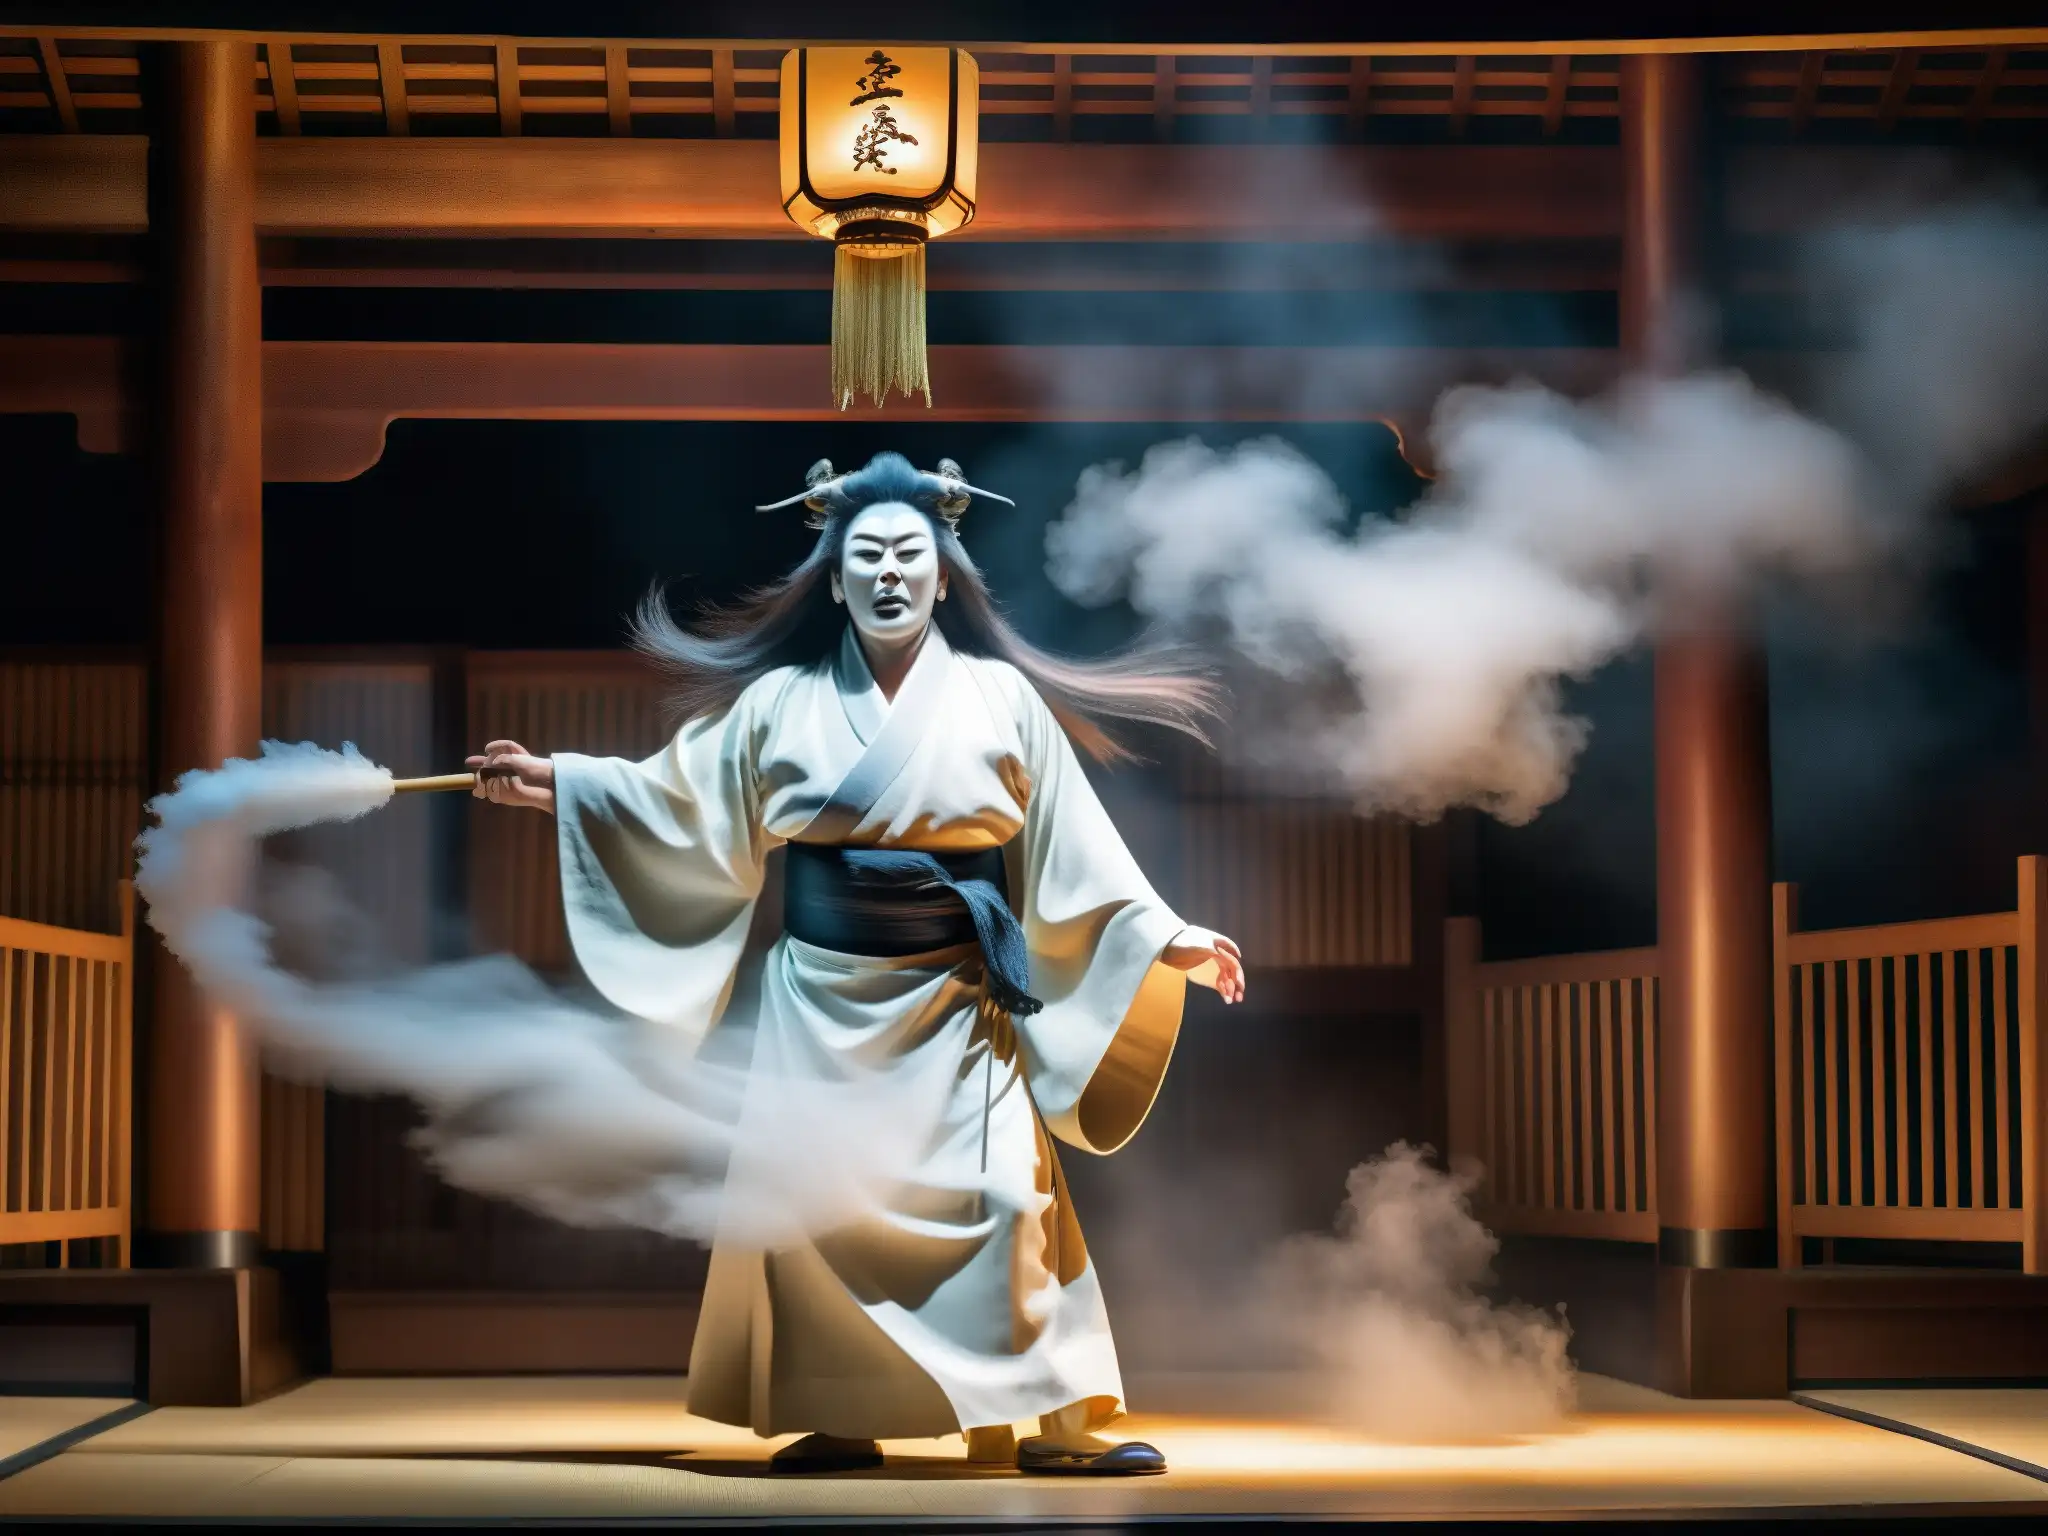 Escenario teatral japonés con un onryō fantasmal vestido de blanco y pelo desaliñado, evocando venganza sobrenatural